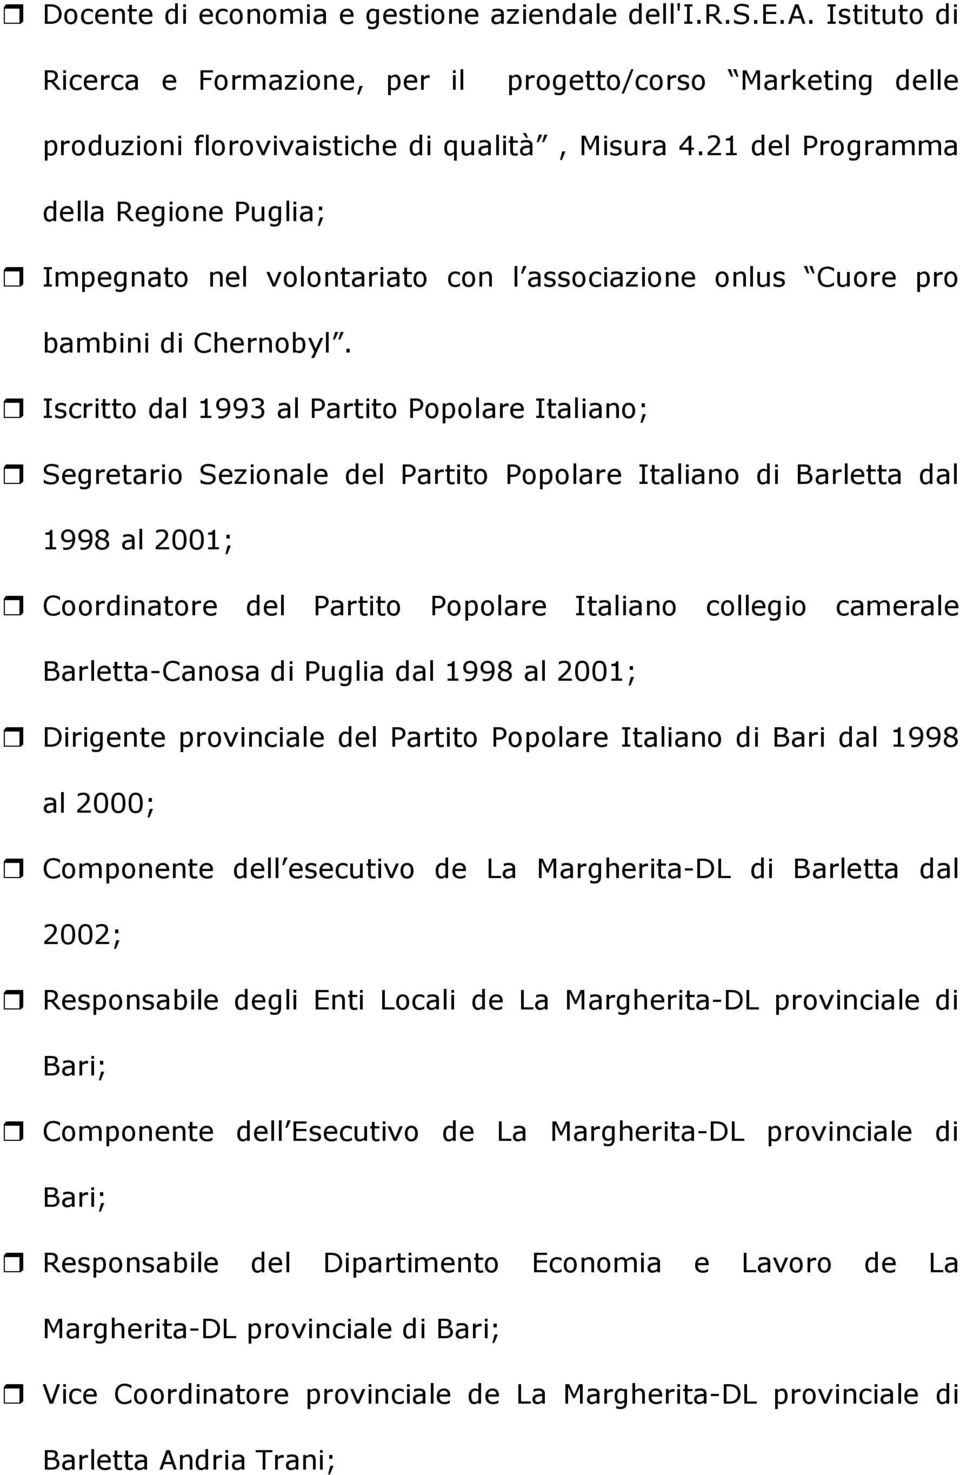 Iscritto dal 1993 al Partito Popolare Italiano; Segretario Sezionale del Partito Popolare Italiano di Barletta dal 1998 al 2001; Coordinatore del Partito Popolare Italiano collegio camerale